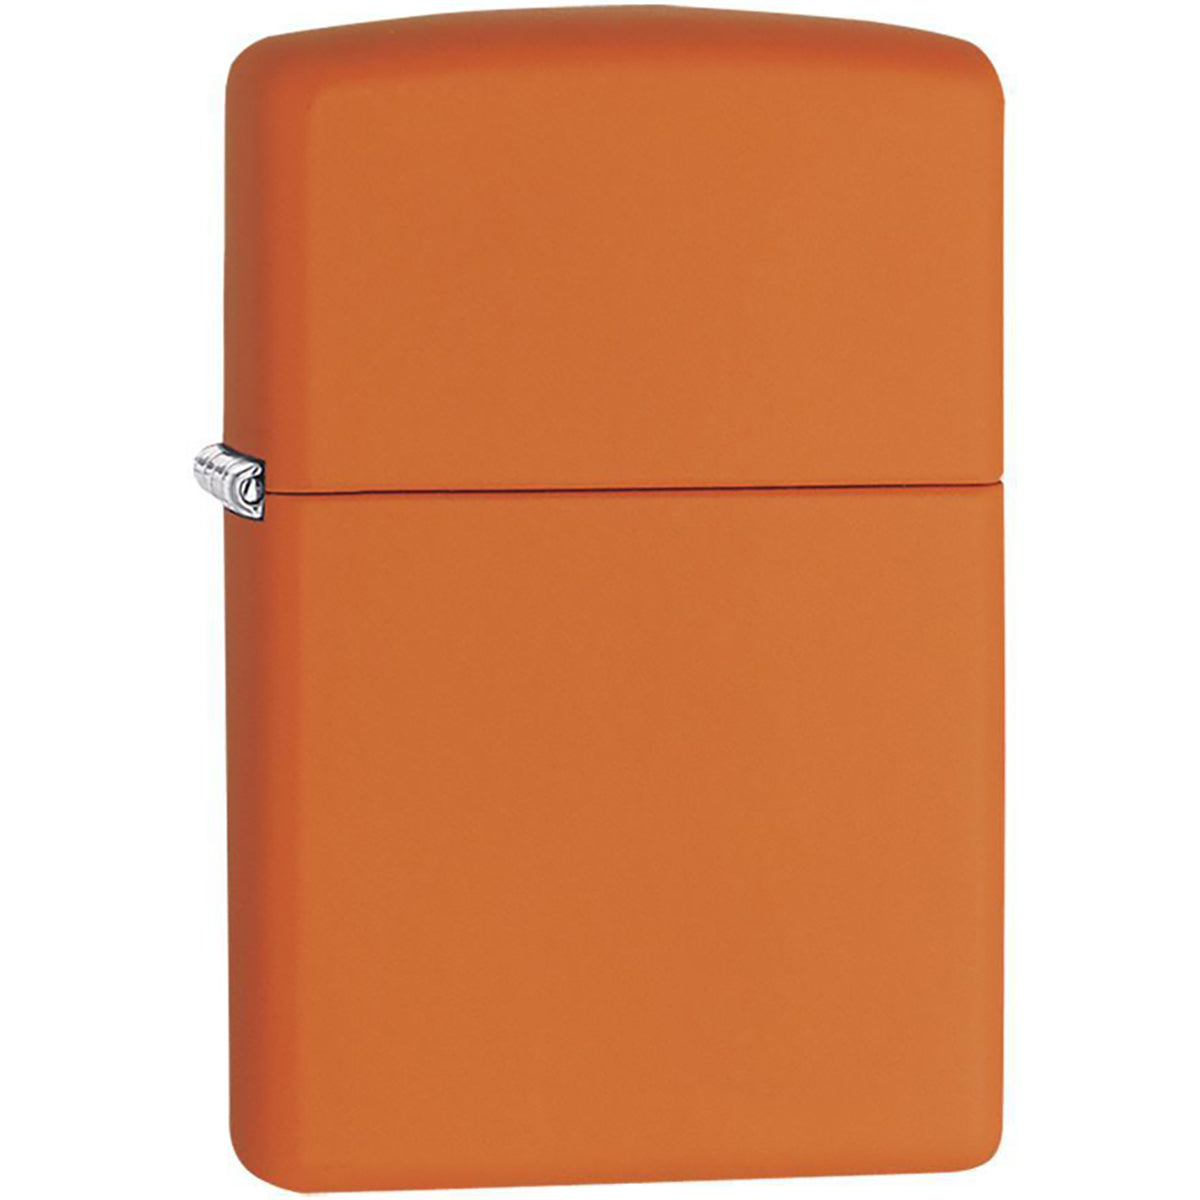 Zippo Regular Matte Pocket Lighter - Orange Zippo